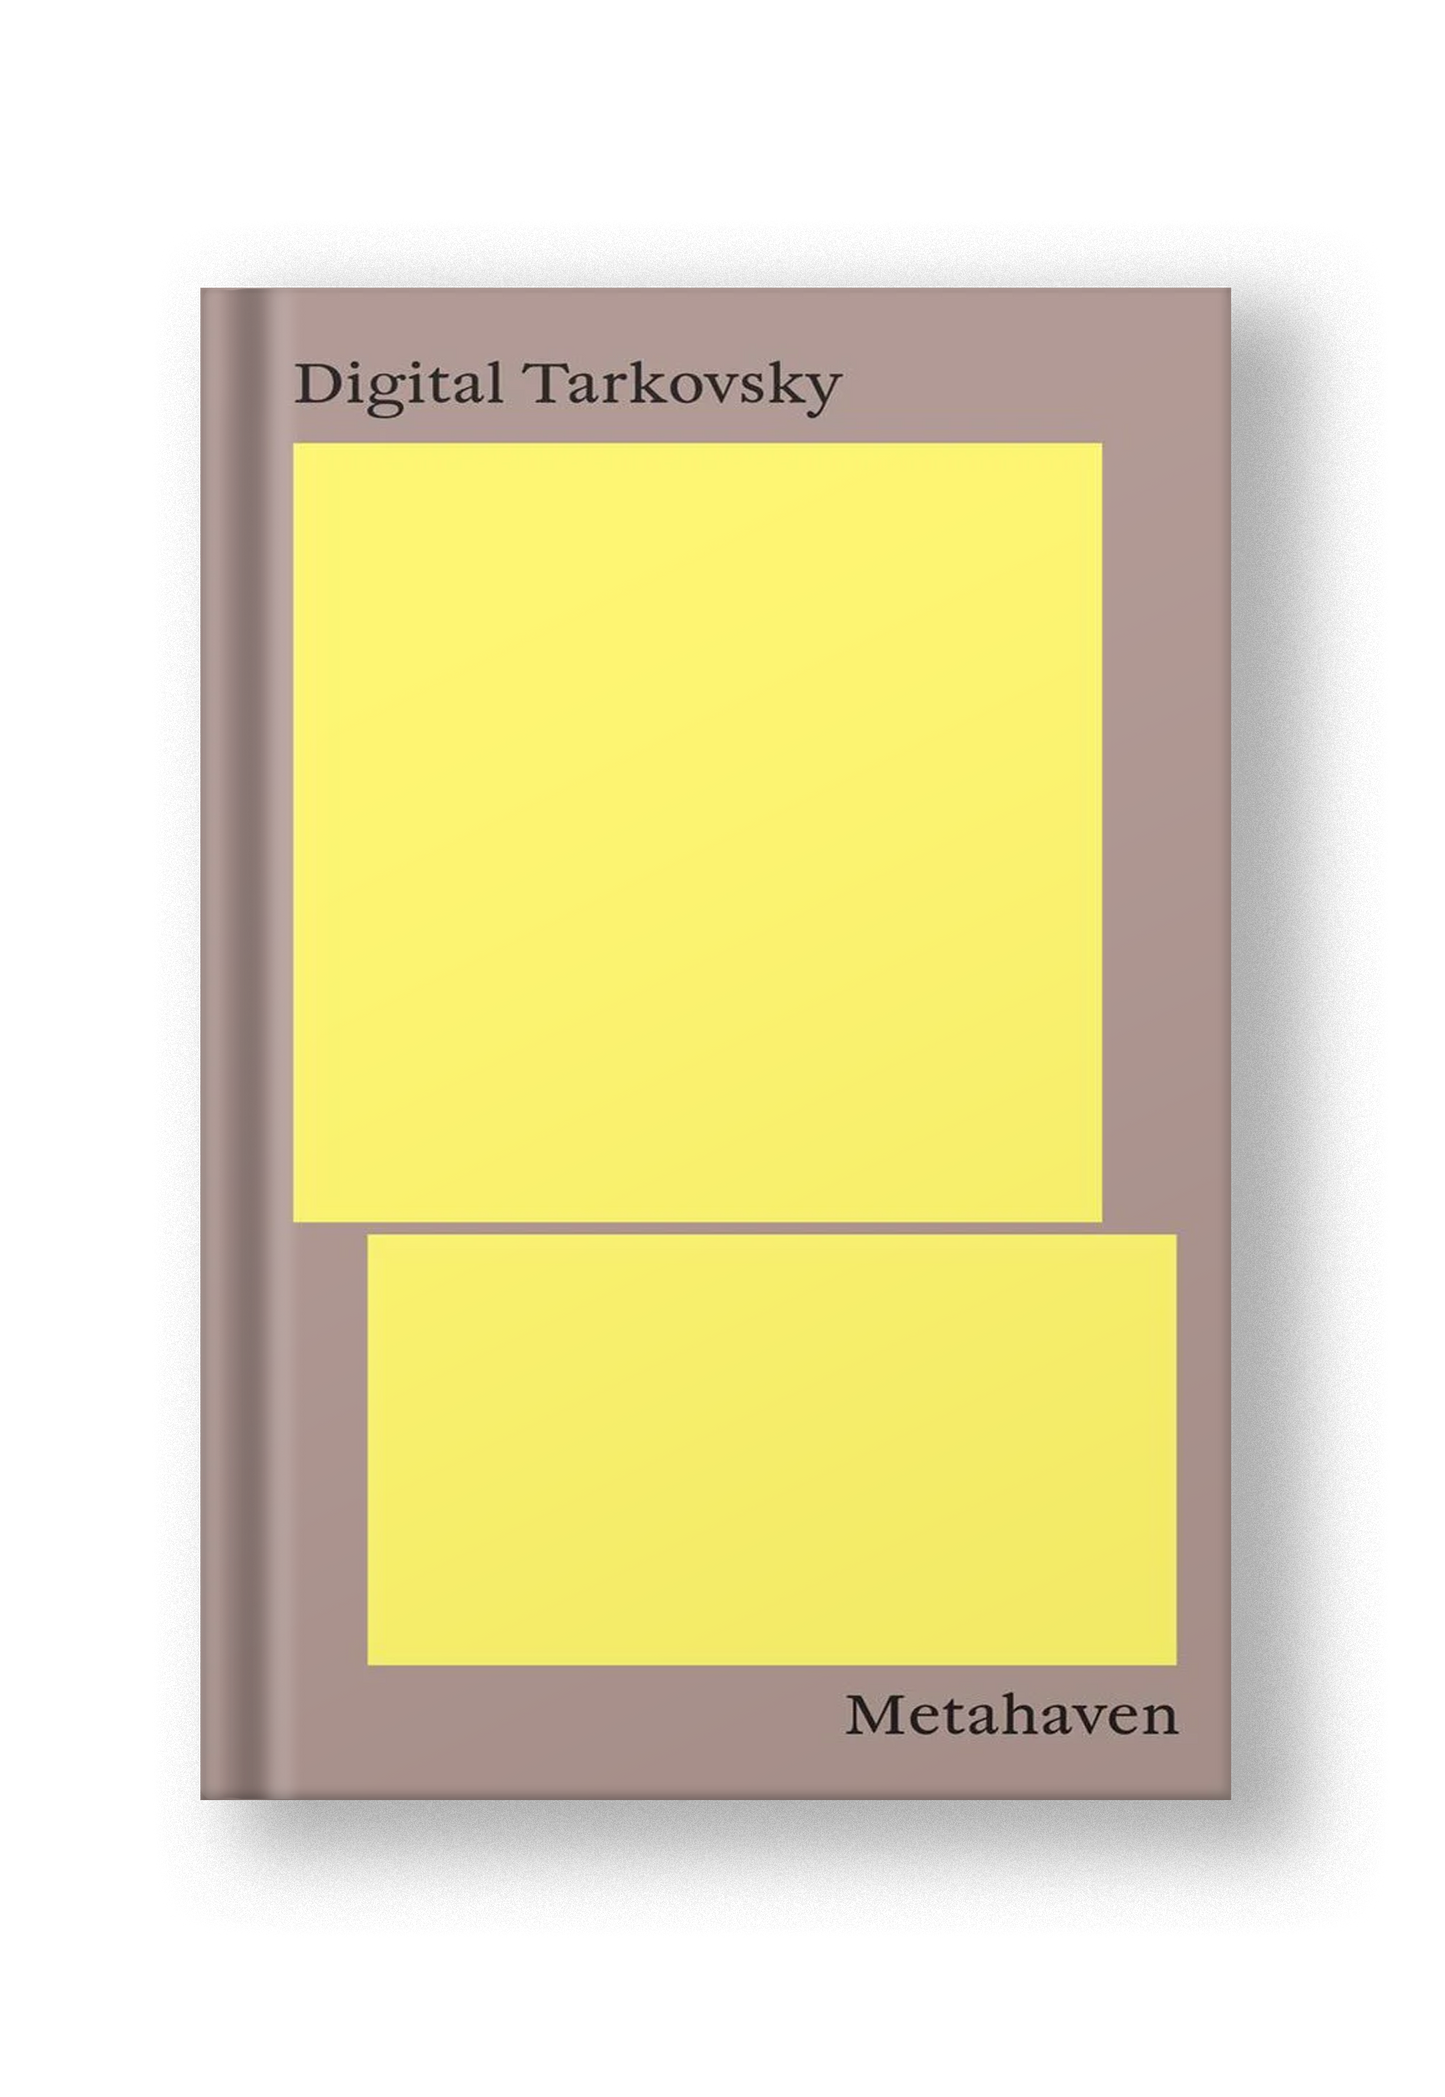 Digital Tarkovsky